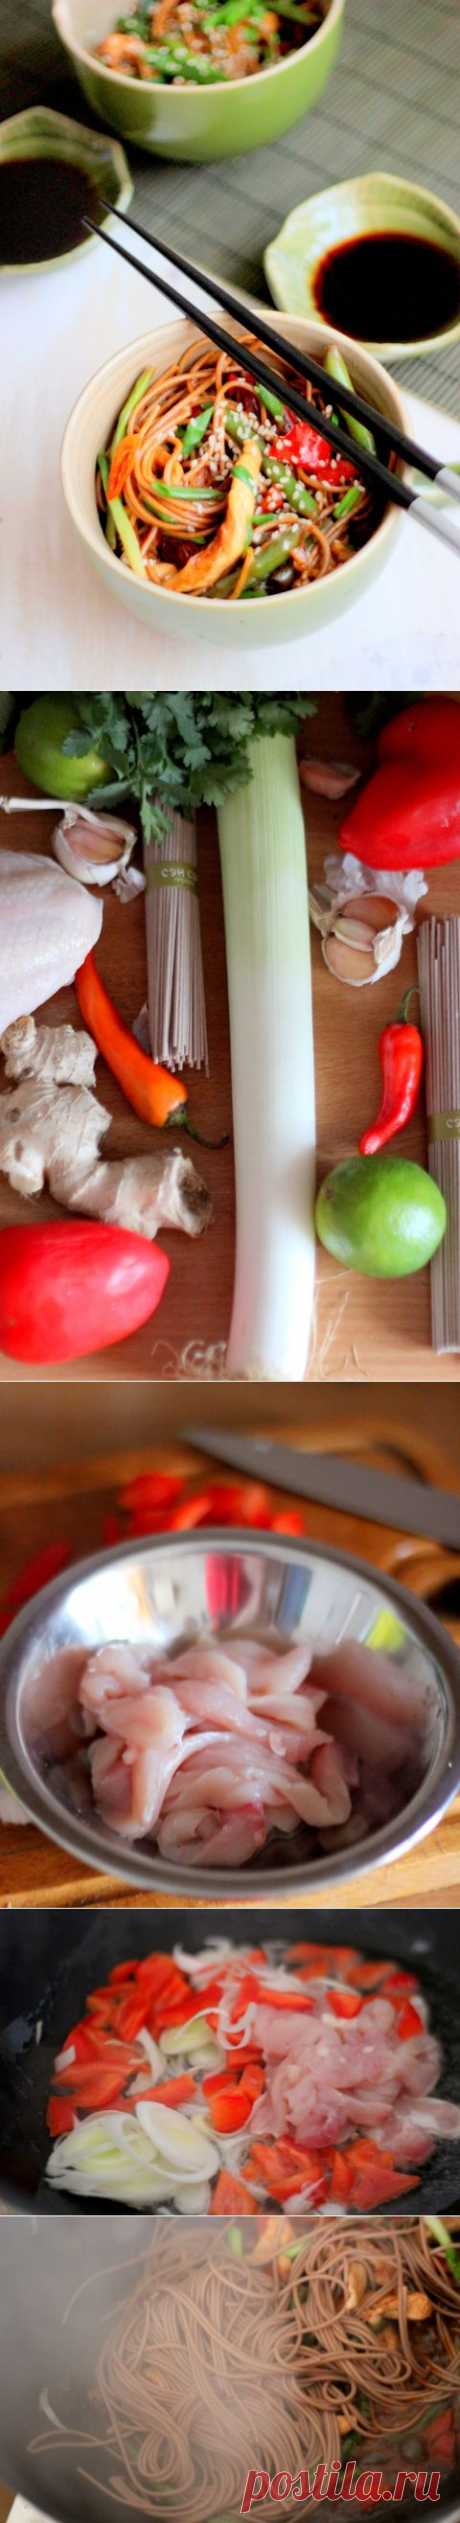 Стир-фрай с курицей - пошаговый рецепт с фото - как приготовить - ингредиенты, состав, время приготовления - Леди Mail.Ru